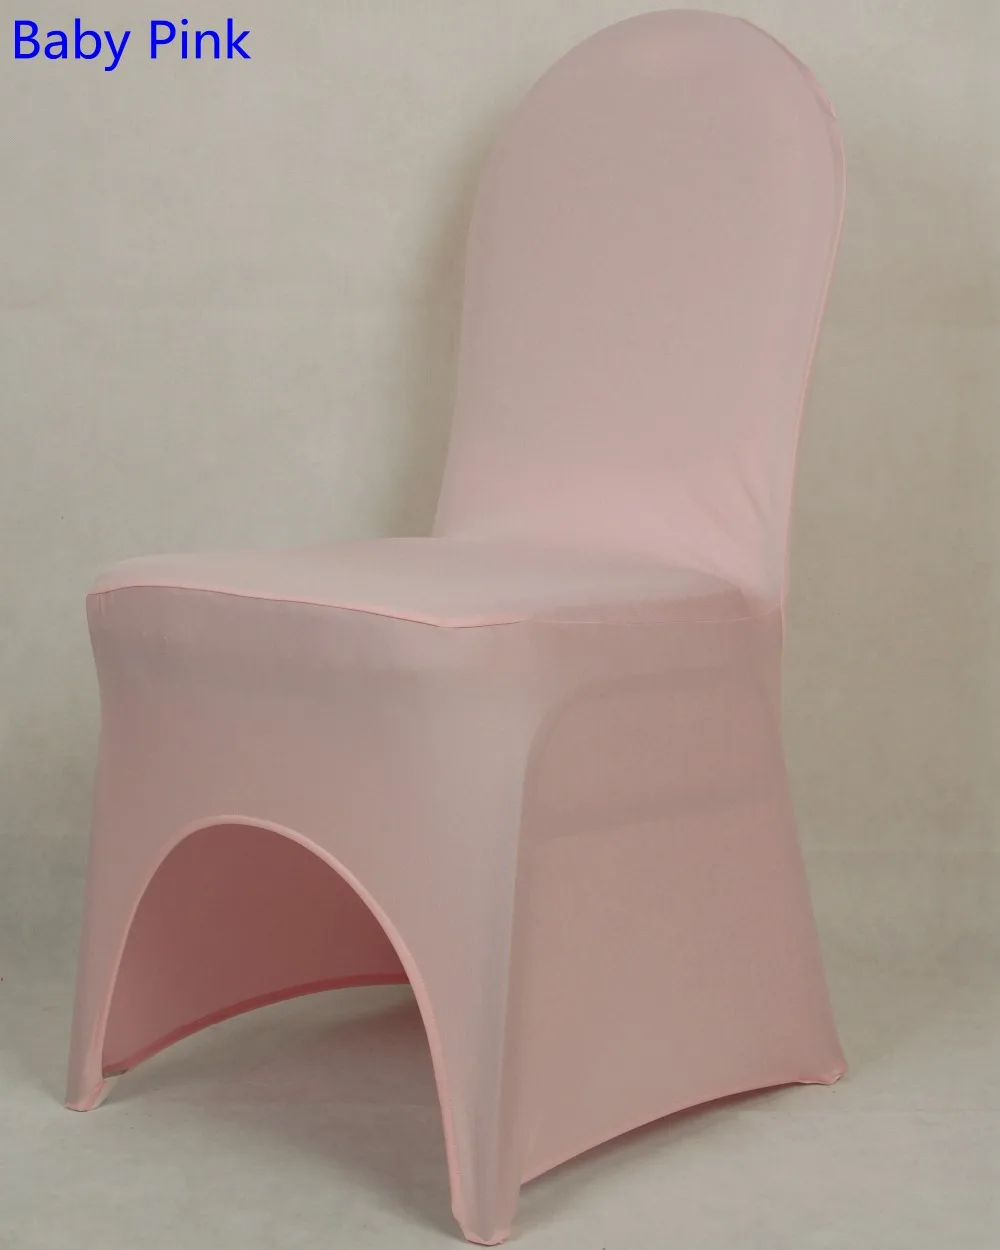 Цвет розовый стул из лайкры Обложка Для Свадебные украшения банкетный спандекс крышка стула оптовая продажа стулья Арка Передняя открытым